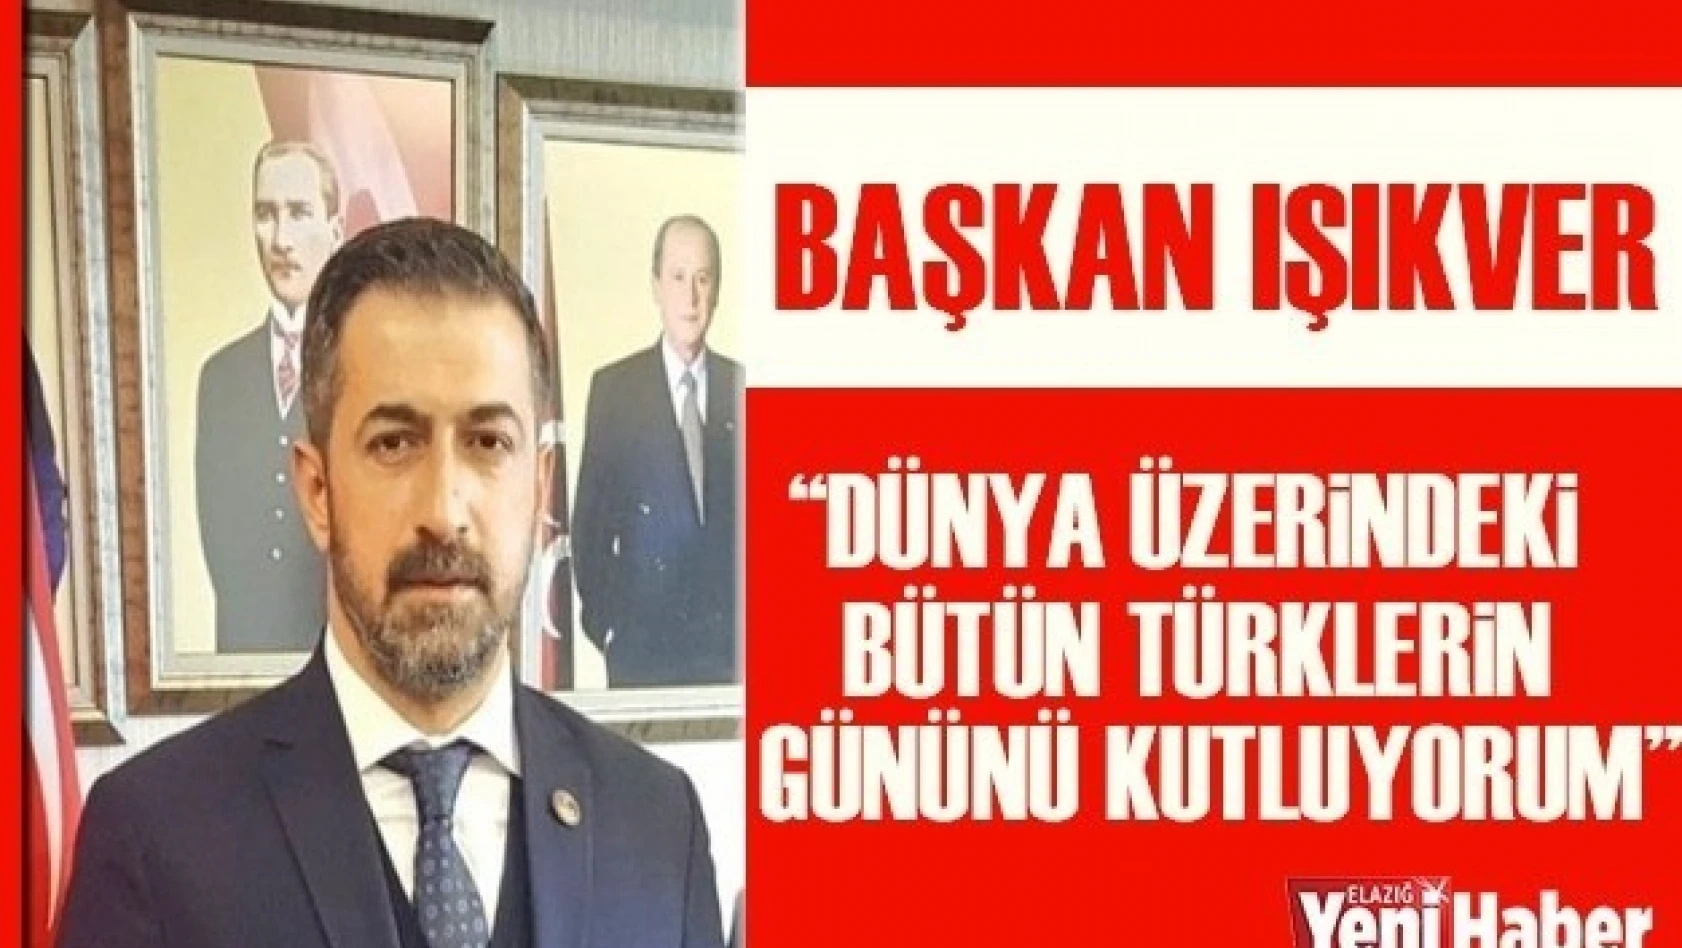 Başkan Işıkver " Dünya Üzerindeki Bütün Türklerin Gününü Kutluyorum"